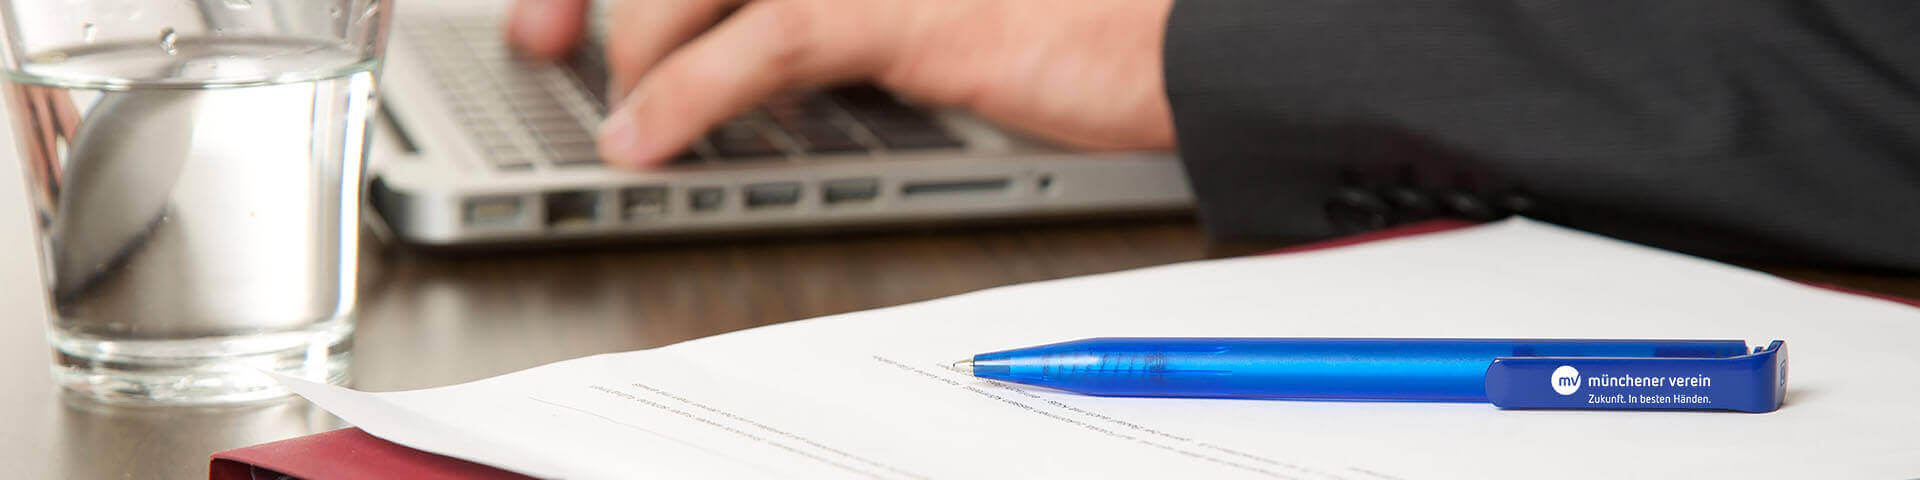 Stift liegt auf Dokument während Person im Hintergrund am Laptop arbeitet